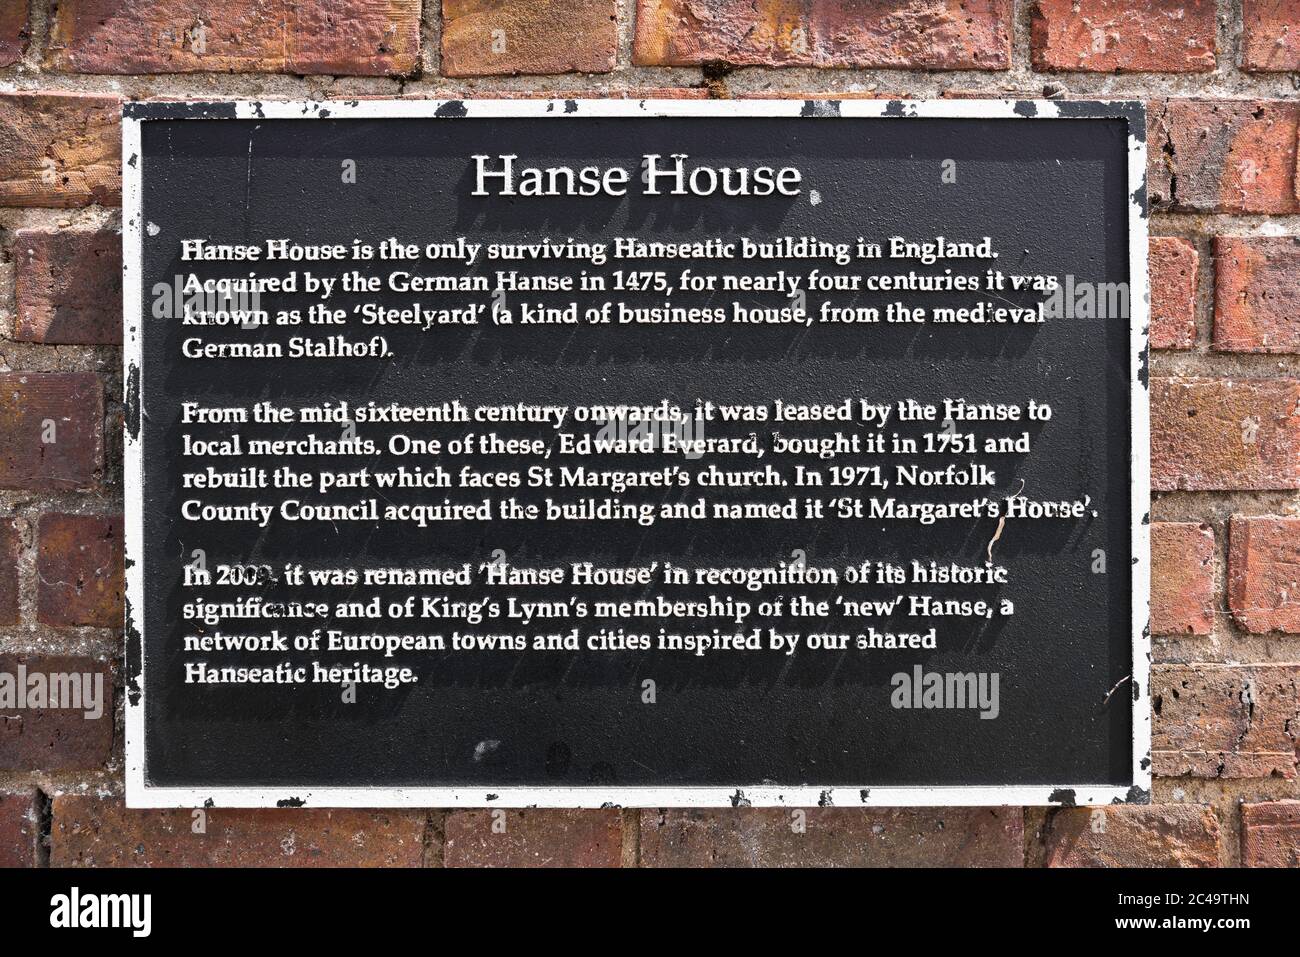 Hanse House, Ansicht einer Informationstafel an der Rückseite des Hanse House, einem ehemaligen Hanseatic Warehouse aus dem 15. Jahrhundert im historischen King's Lynn, Großbritannien Stockfoto